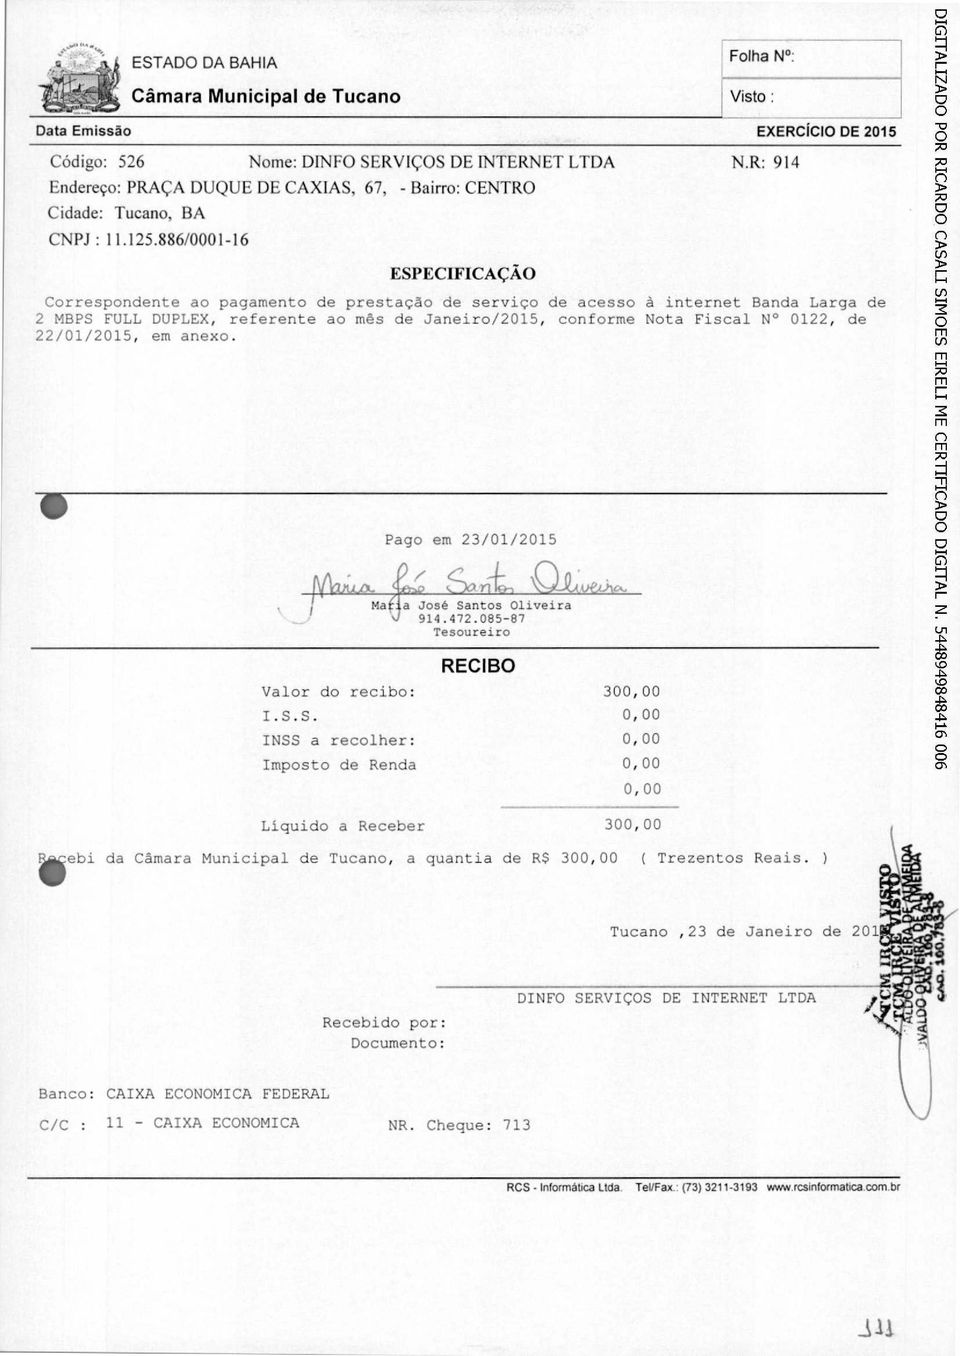 ntos Oliveira 914.472.085-87 Tesoureiro RECIBO Valor do recibo: 300,00 I.S.